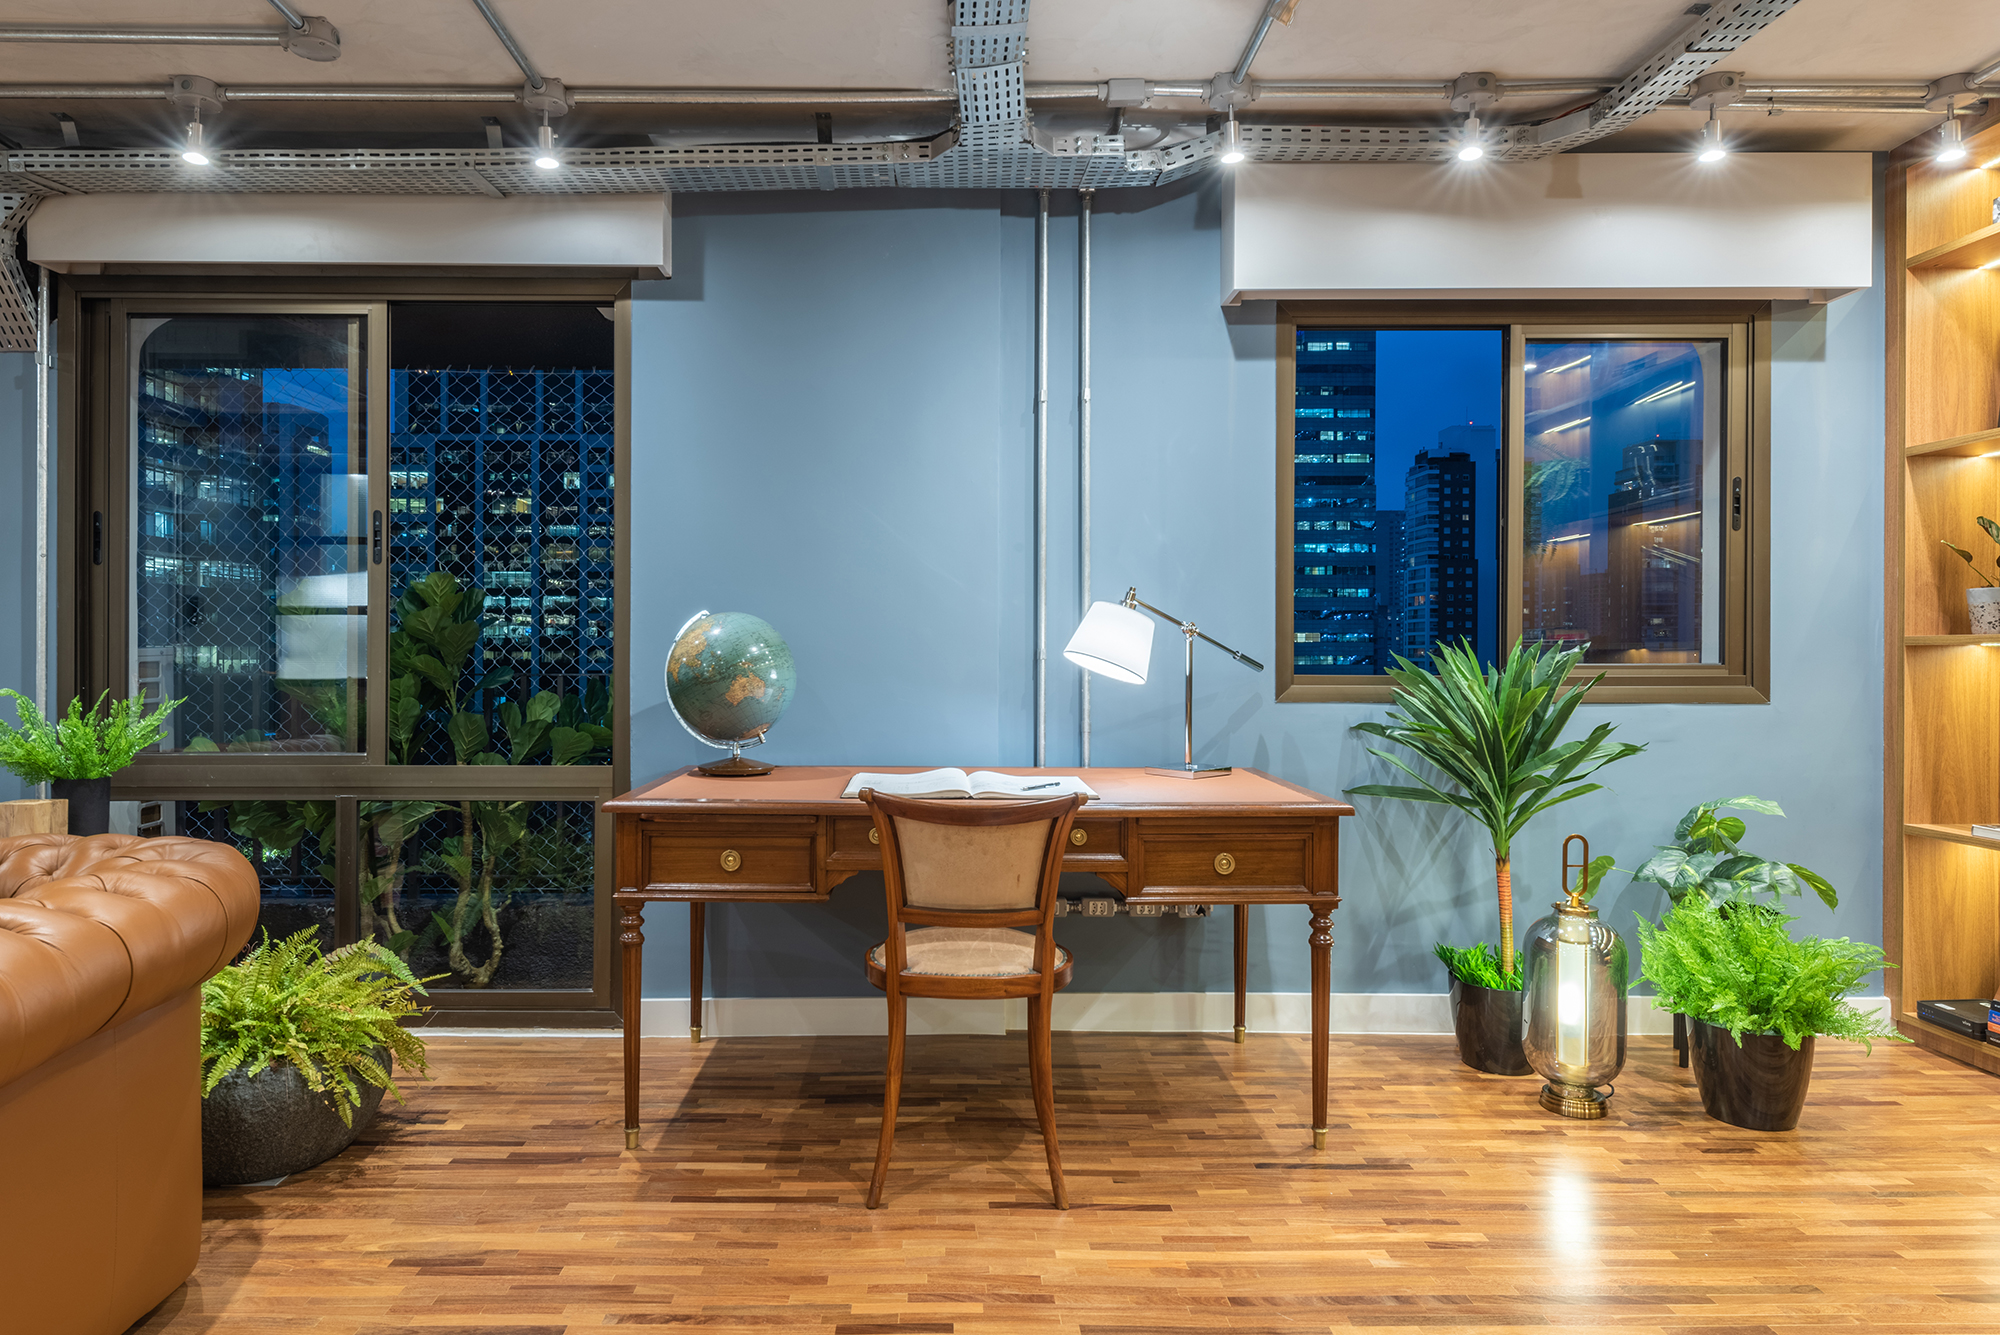 Estilo industrial e elementos clássicos se unem em apartamento de 130 m². Projeto de Pietro Terlizzi. Na foto, home office com parede azul e estante com iluminação indireta,